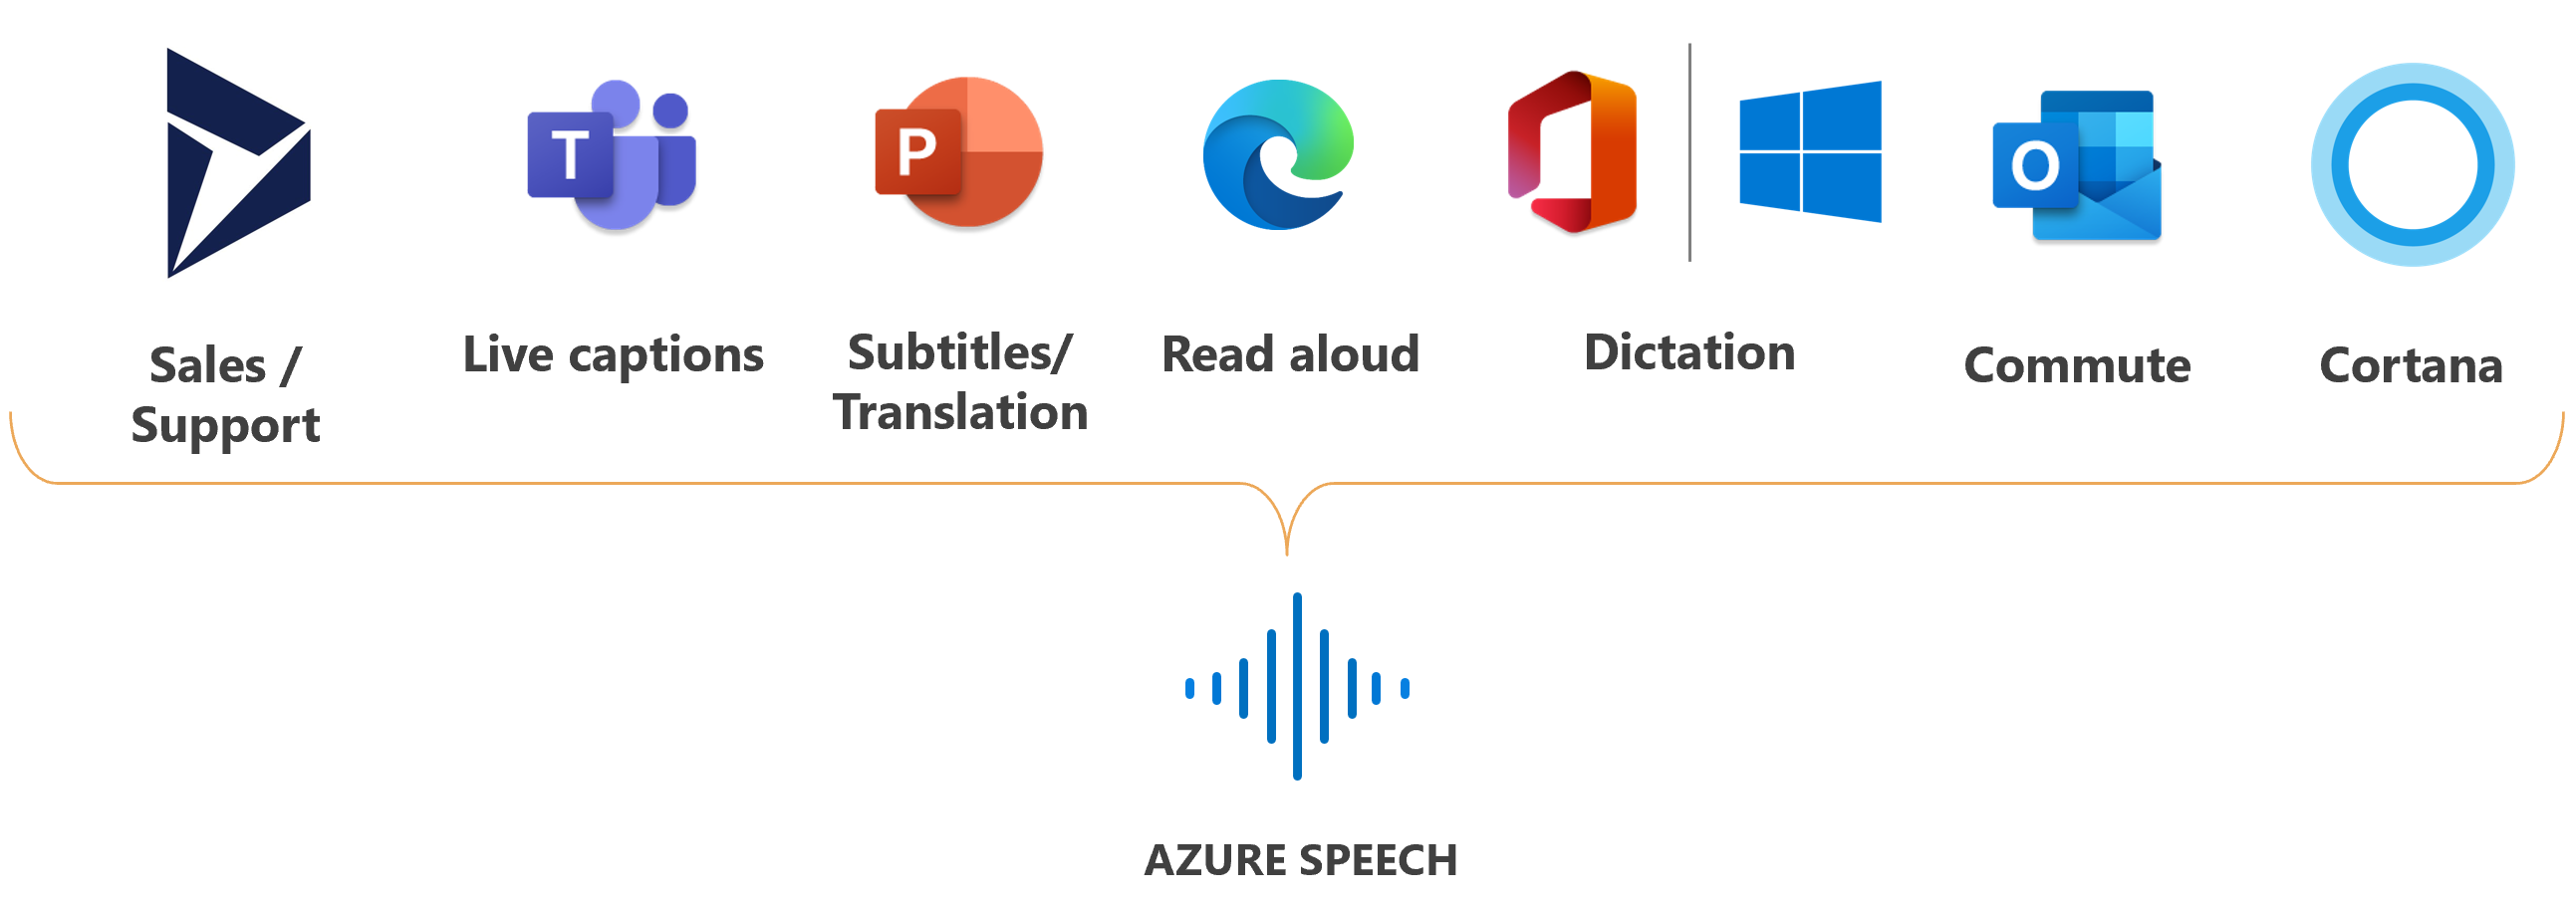 顯示使用語音服務的 Microsoft 產品標誌的影像。